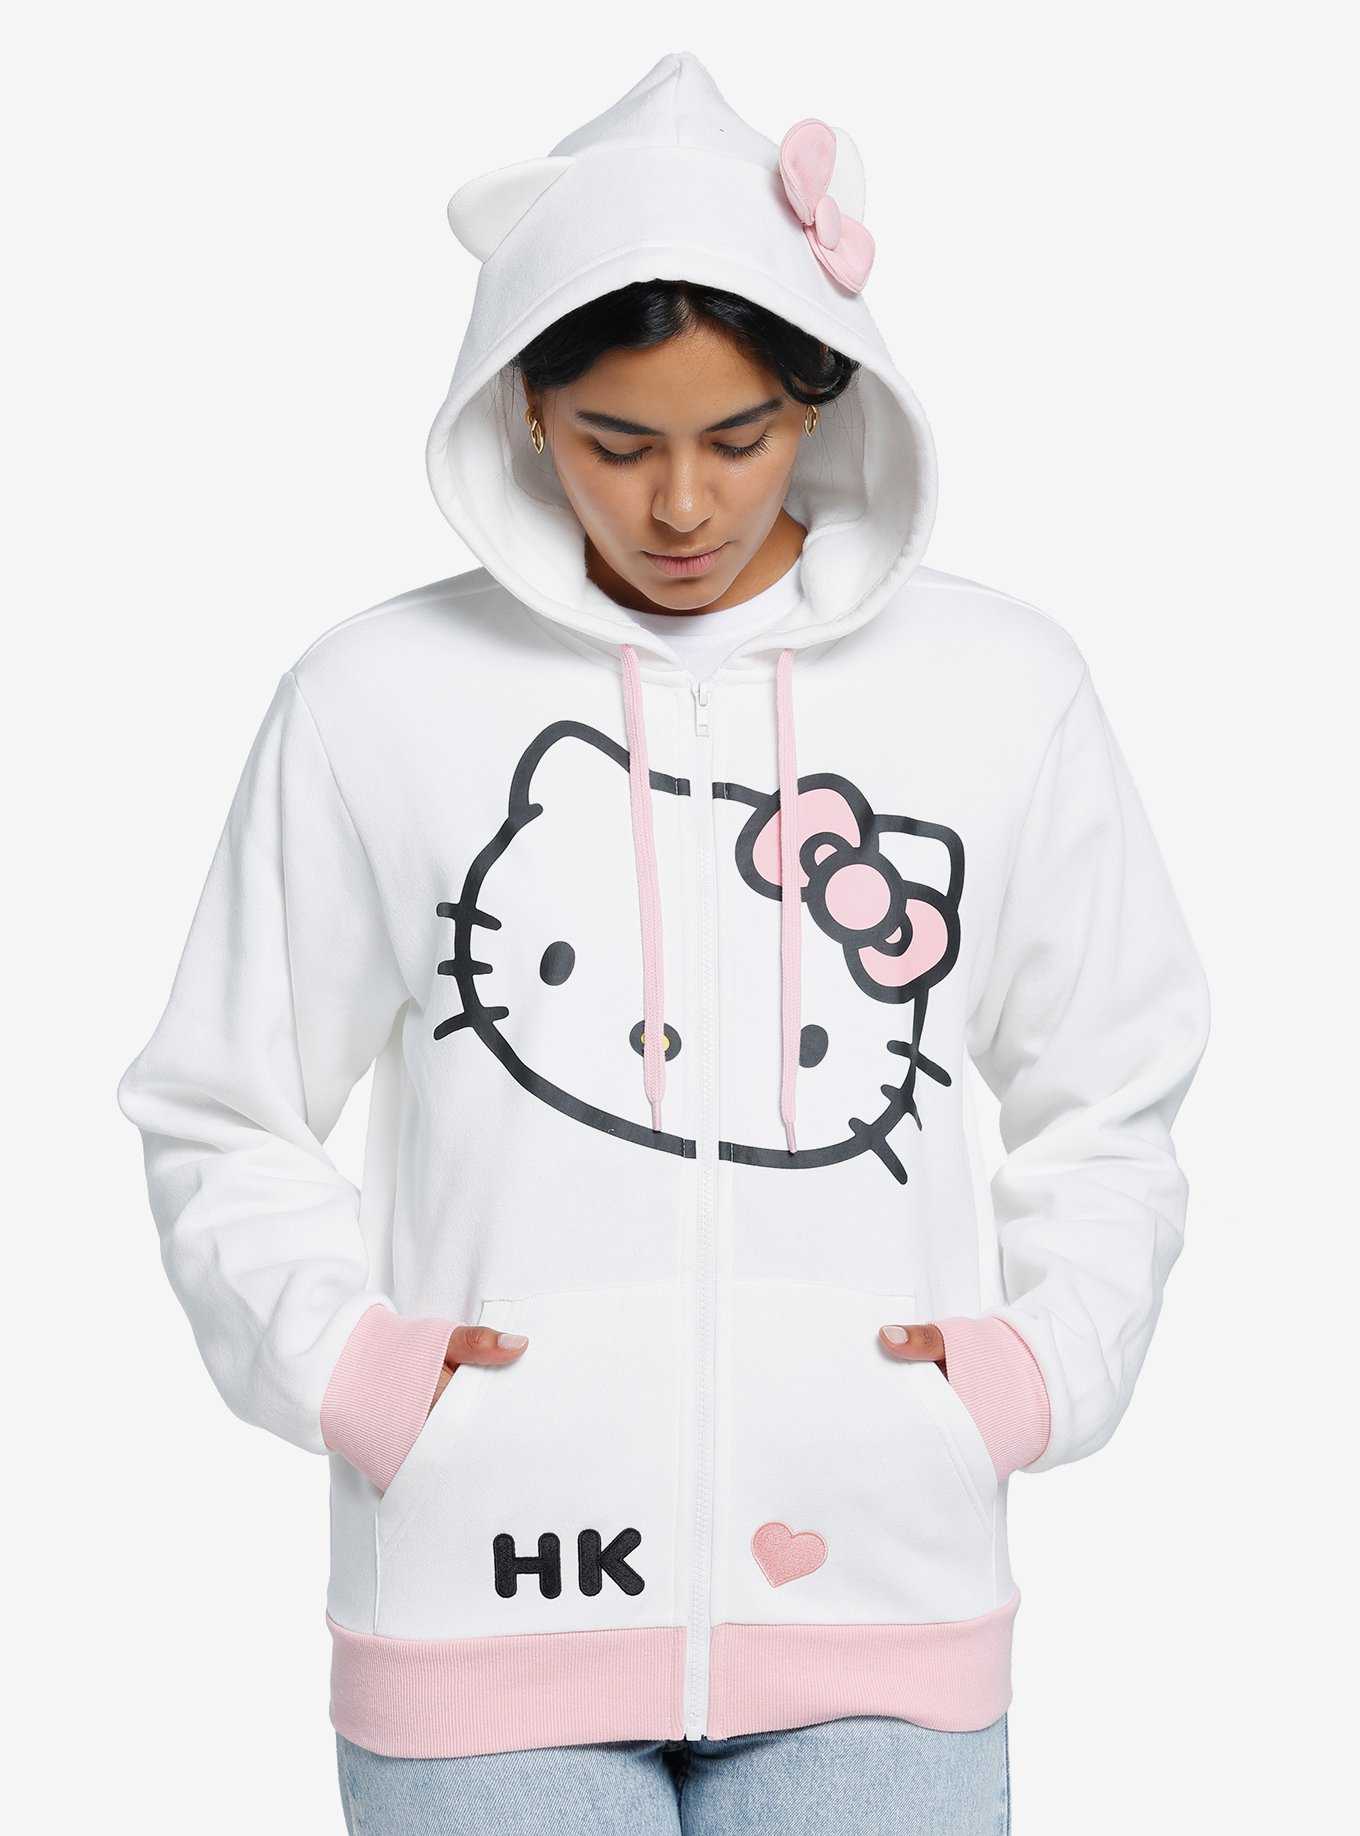 Hello Kitty 3D Ears Girls Hoodie, , hi-res